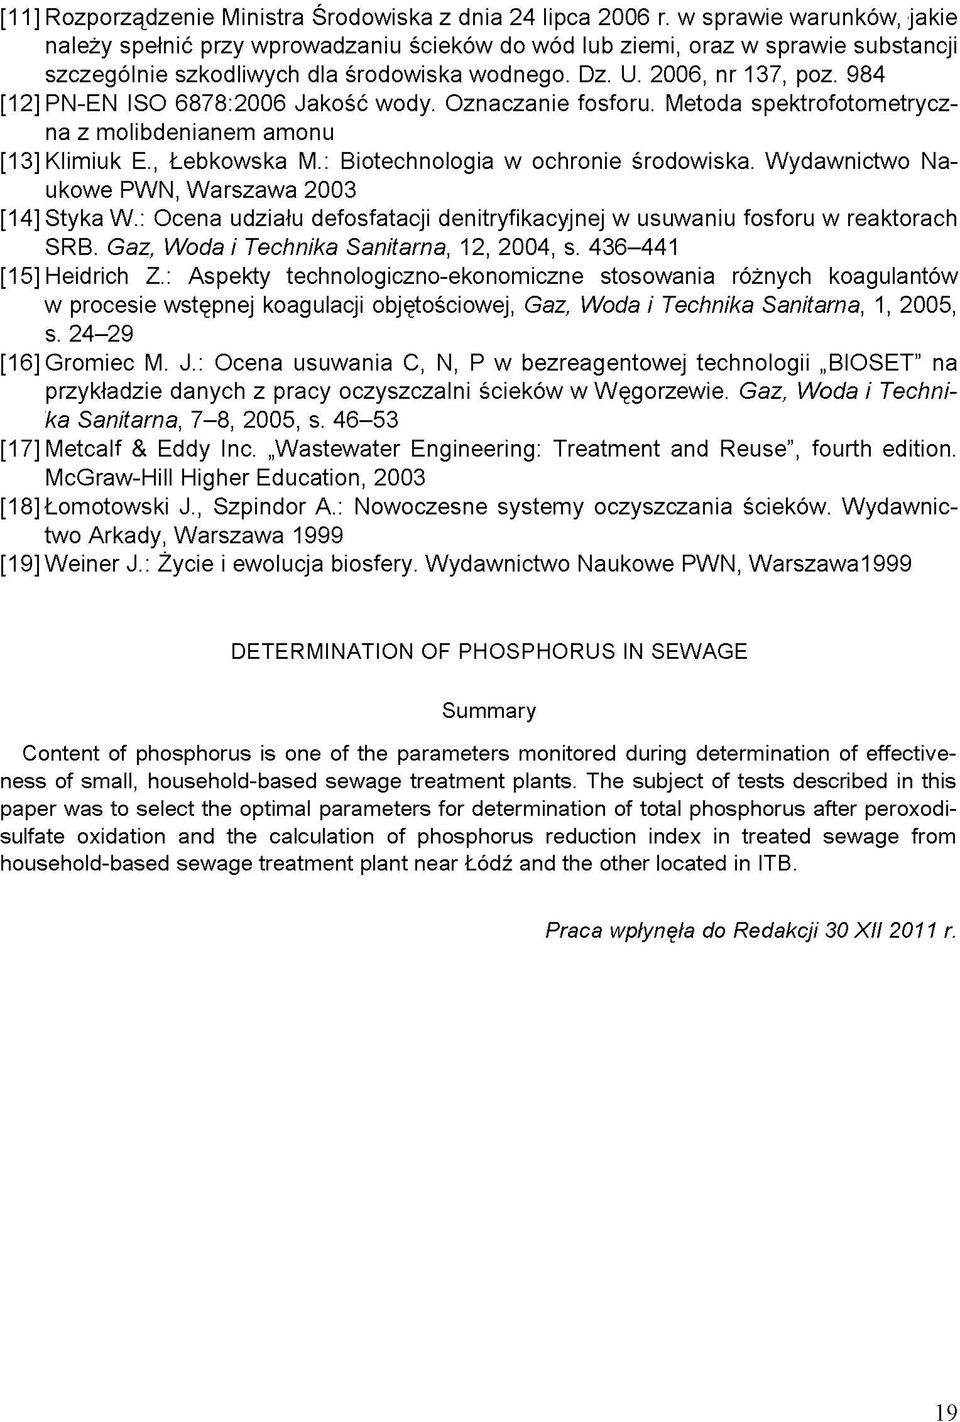 984 [12] PN-EN ISO 6878:2006 Jakość wody. Oznaczanie fosforu. Metoda spektrofotometryczna z molibdenianem amonu [13] Klimiuk E., Łebkowska M.: Biotechnologia w ochronie środowiska.